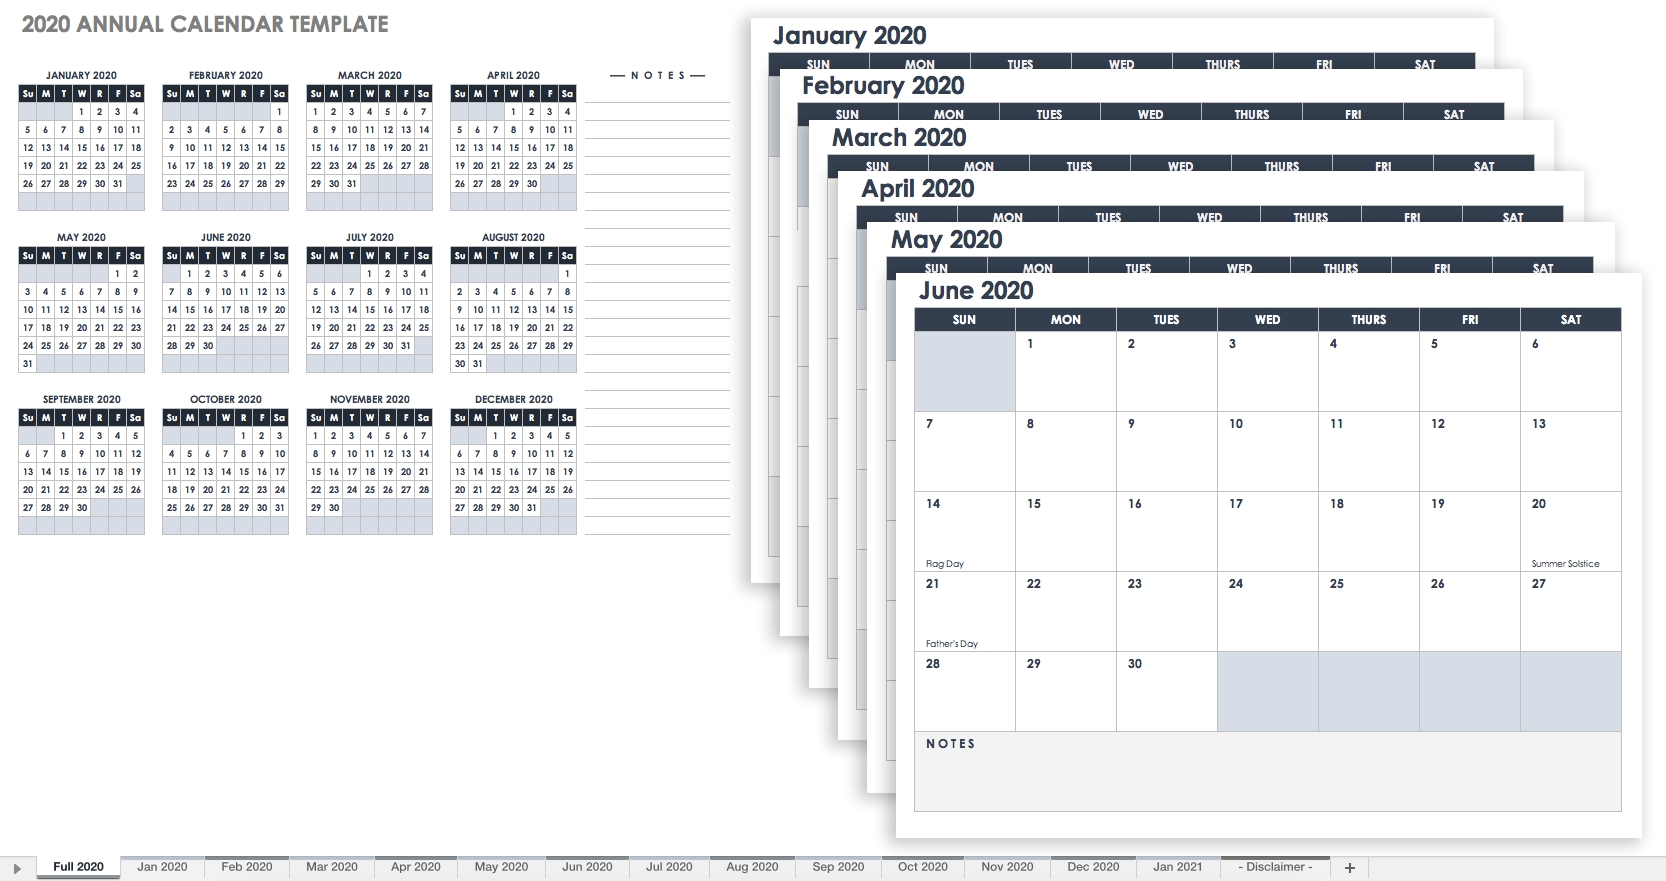 Free Blank Calendar Templates - Smartsheet-Bi Weekly Pay Schedule 2020 Template